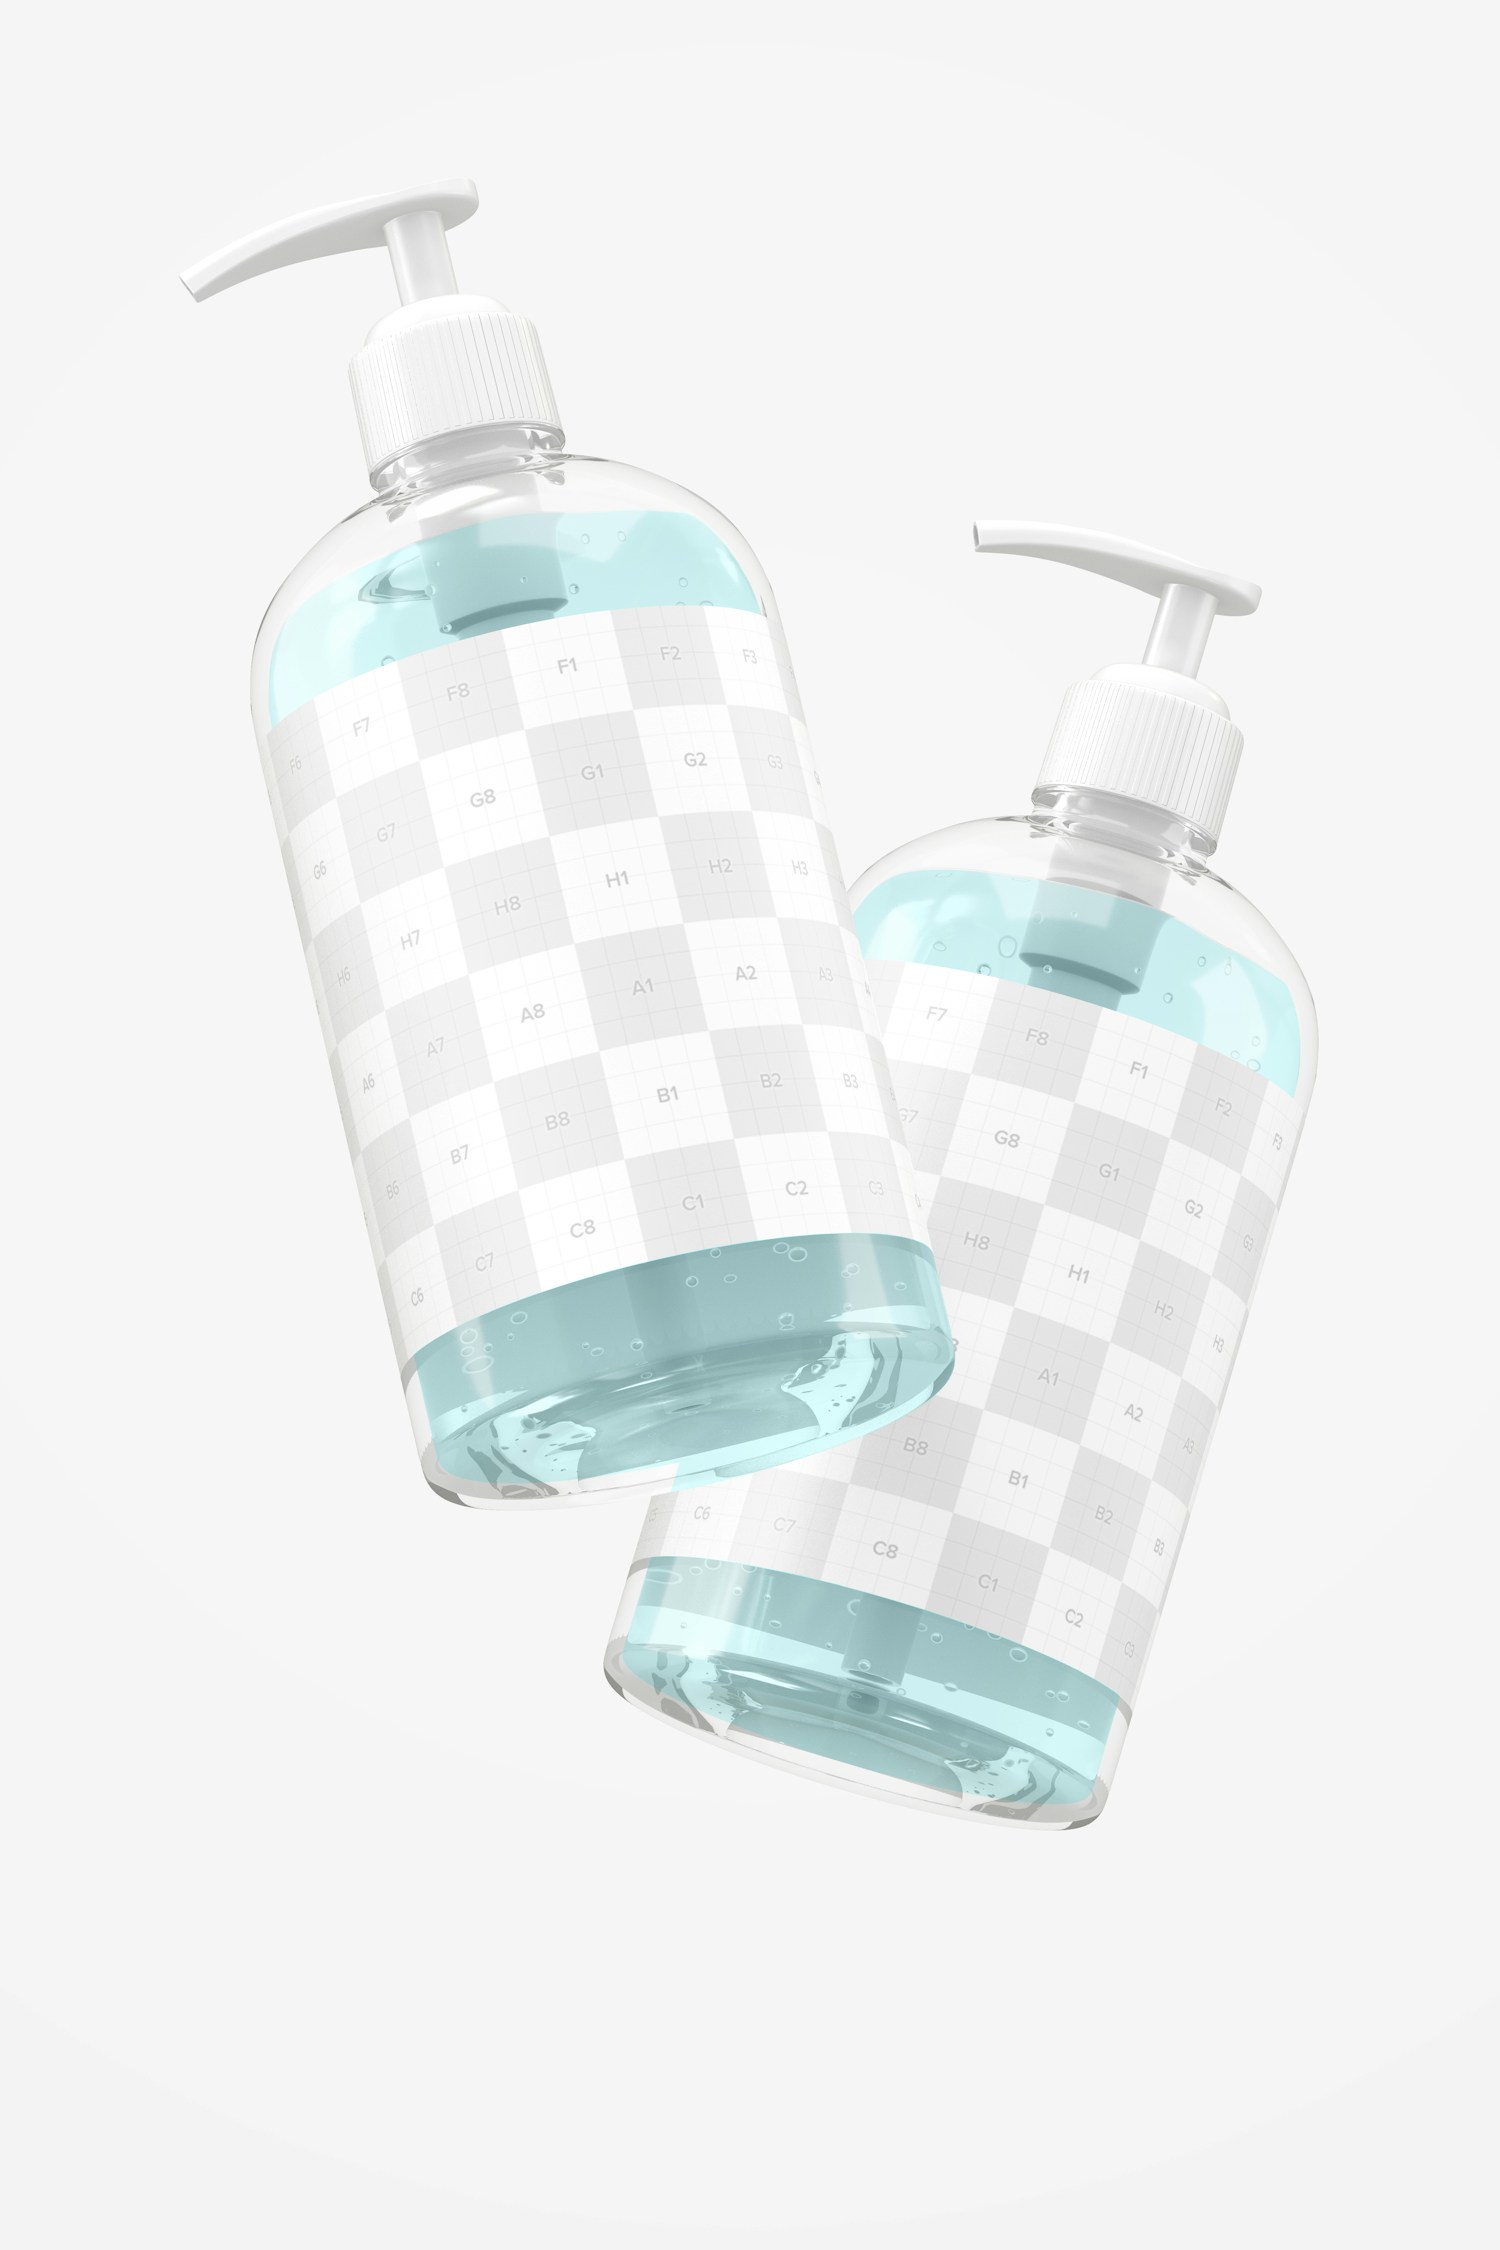 16 oz Sanitizing Gel Bottles Mockup, Floating